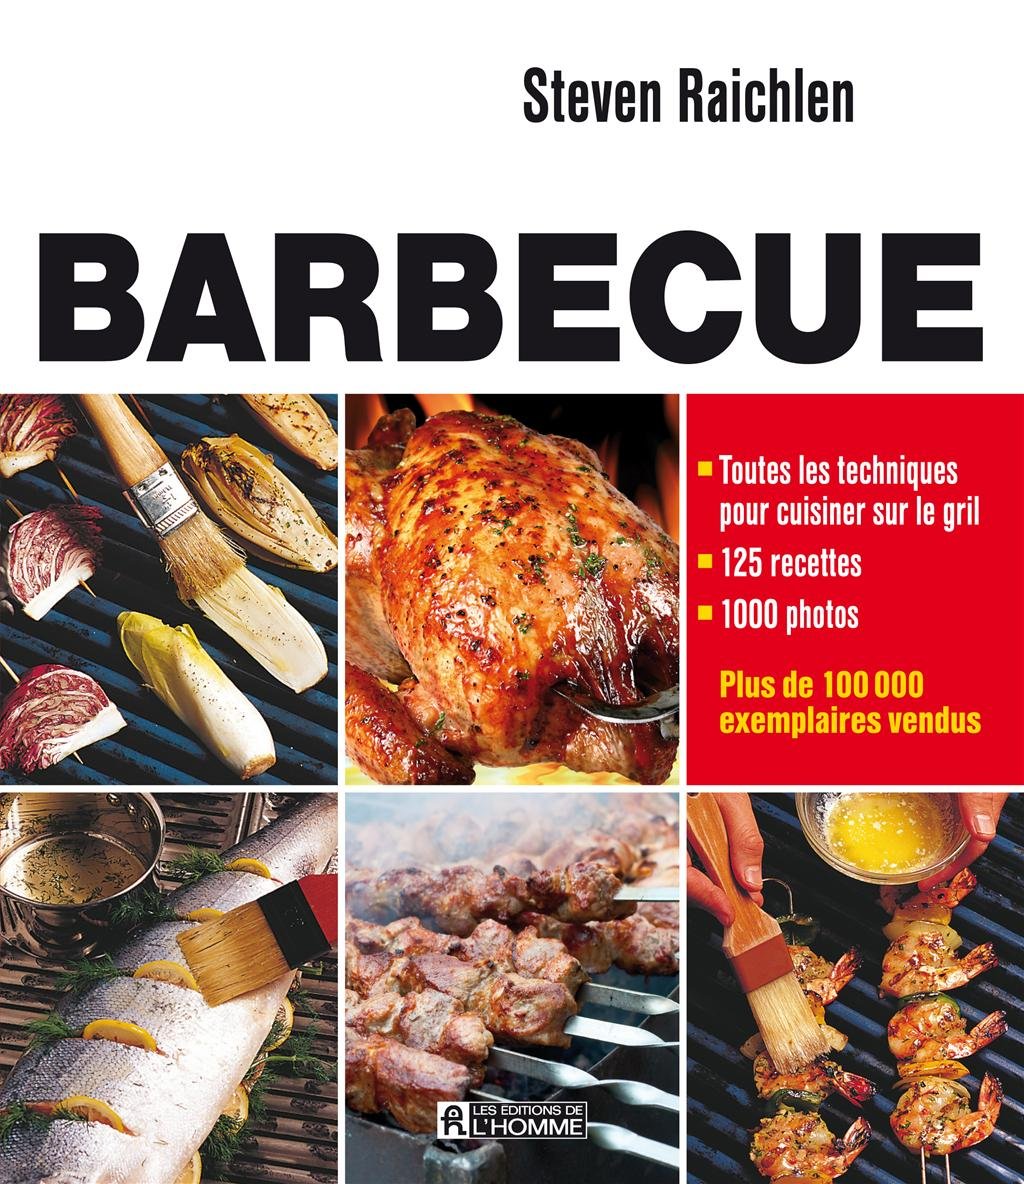 Barbecue - Toutes les techniques pour cuisiner sur le gril - Steven Raichlen